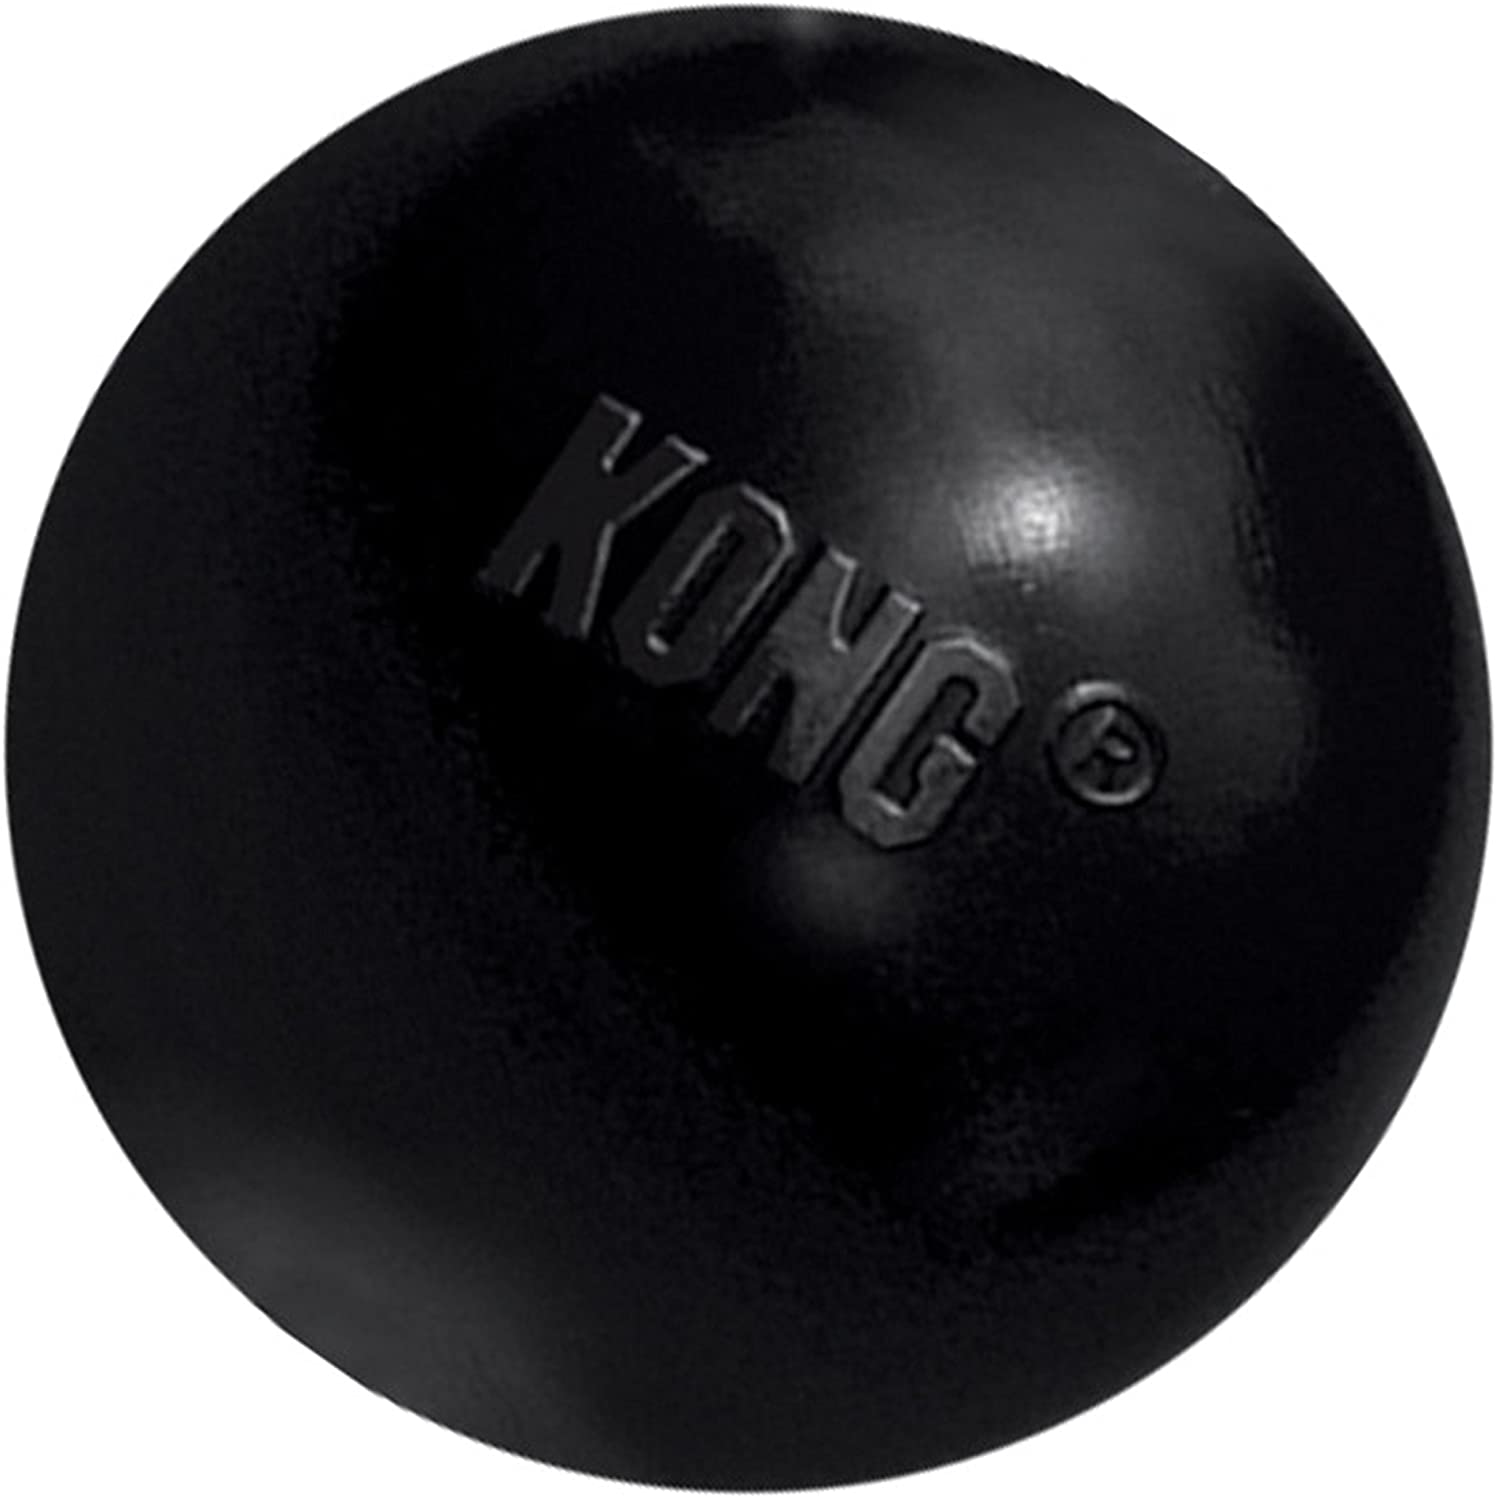  KONG - Extreme Ball - Juguete de caucho para mandíbulas potentes, negro - Raza pequeña 